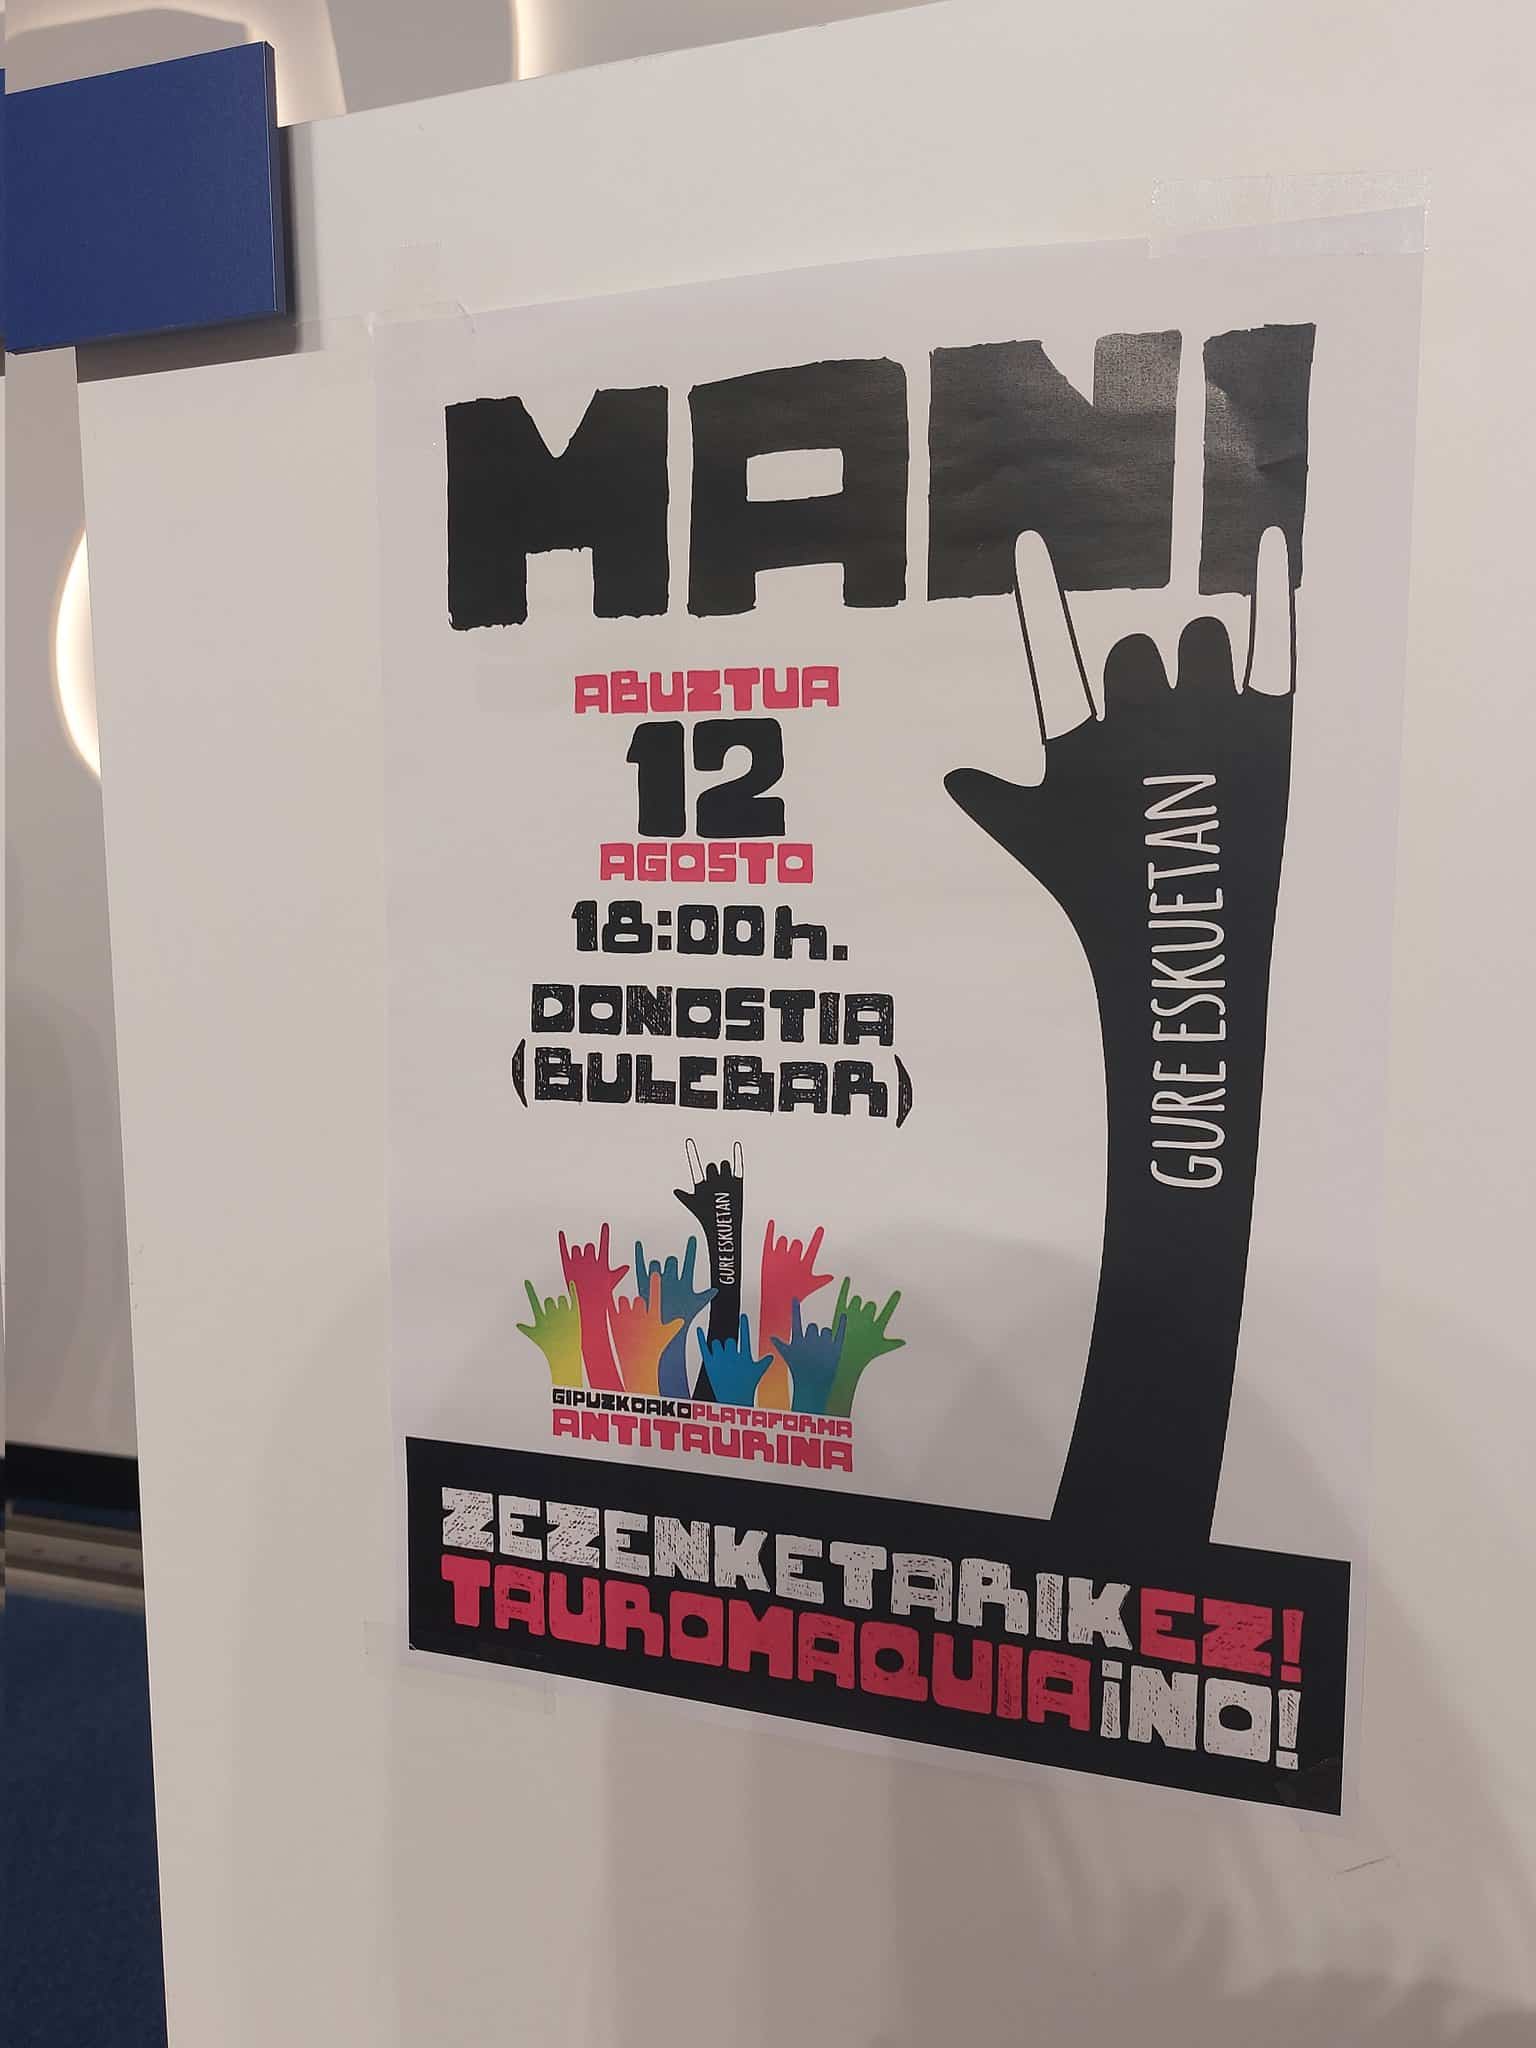 tauro - Convocan una manifestación antitaurina el 12 de agosto en Donostia